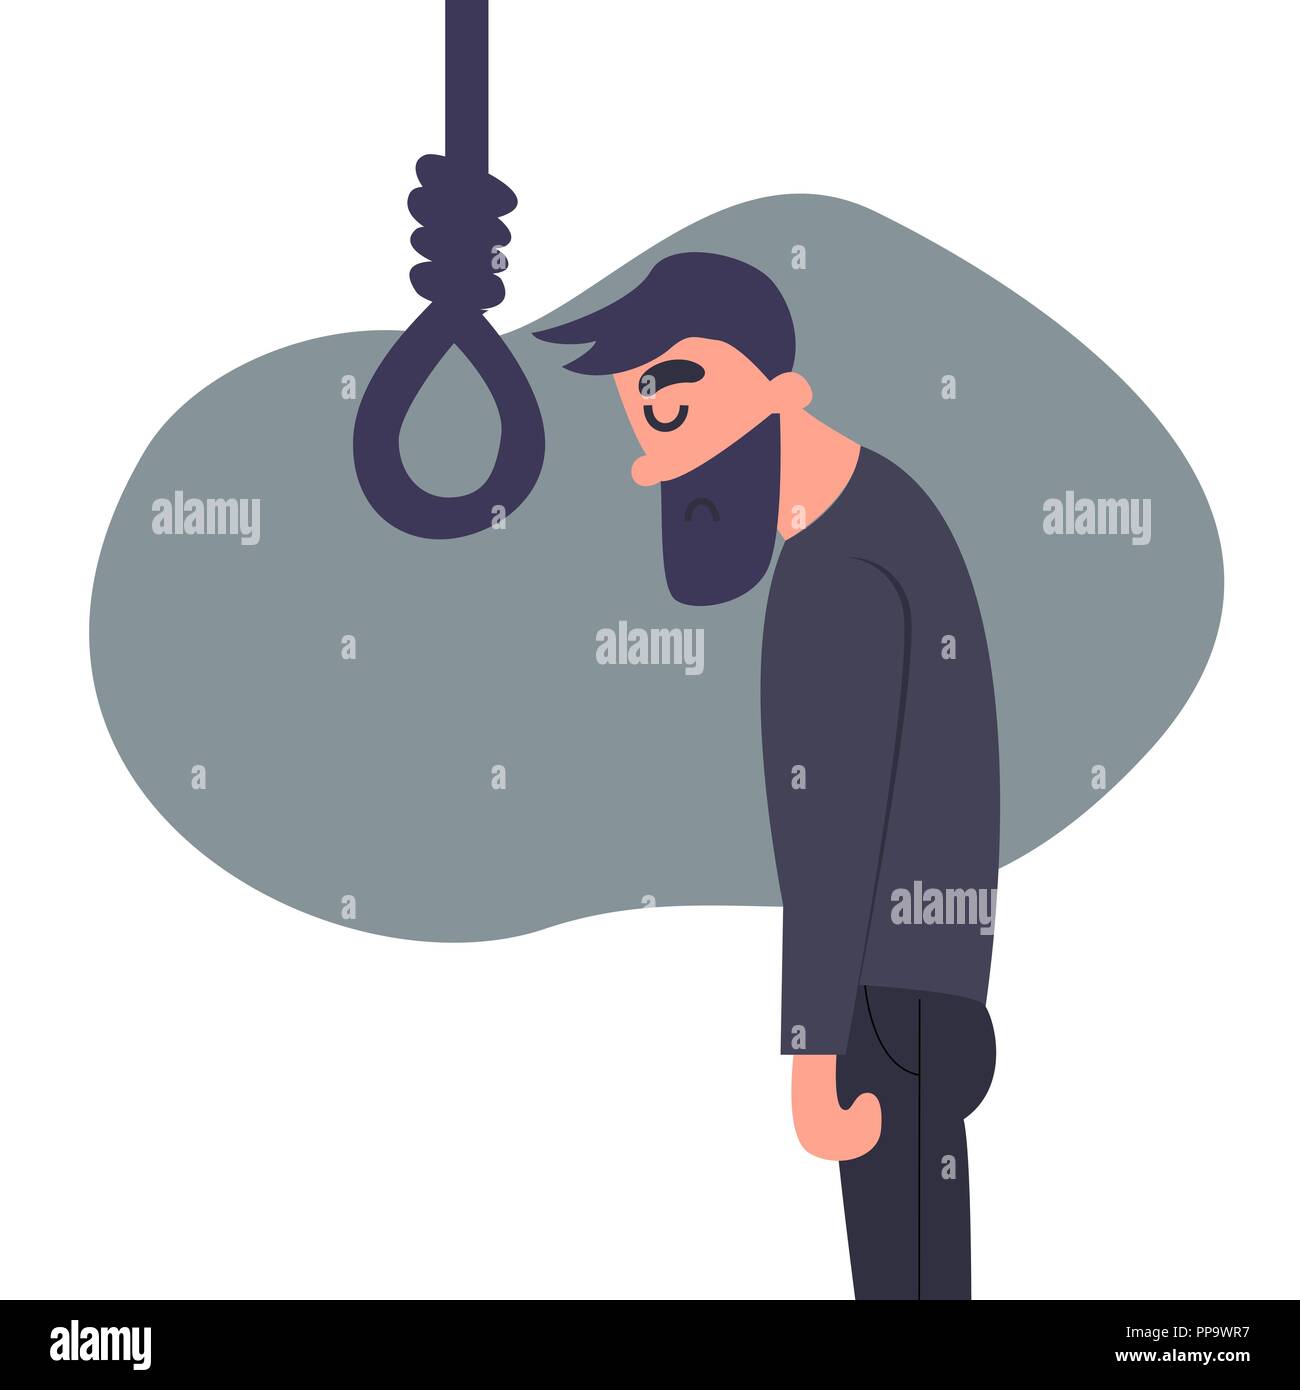 Cartoon Flachbild verzweifelten Mann will sich selbst zu hängen. Deprimiert junge Mann will Selbstmord begehen. Psychische angst Konzept Stock Vektor